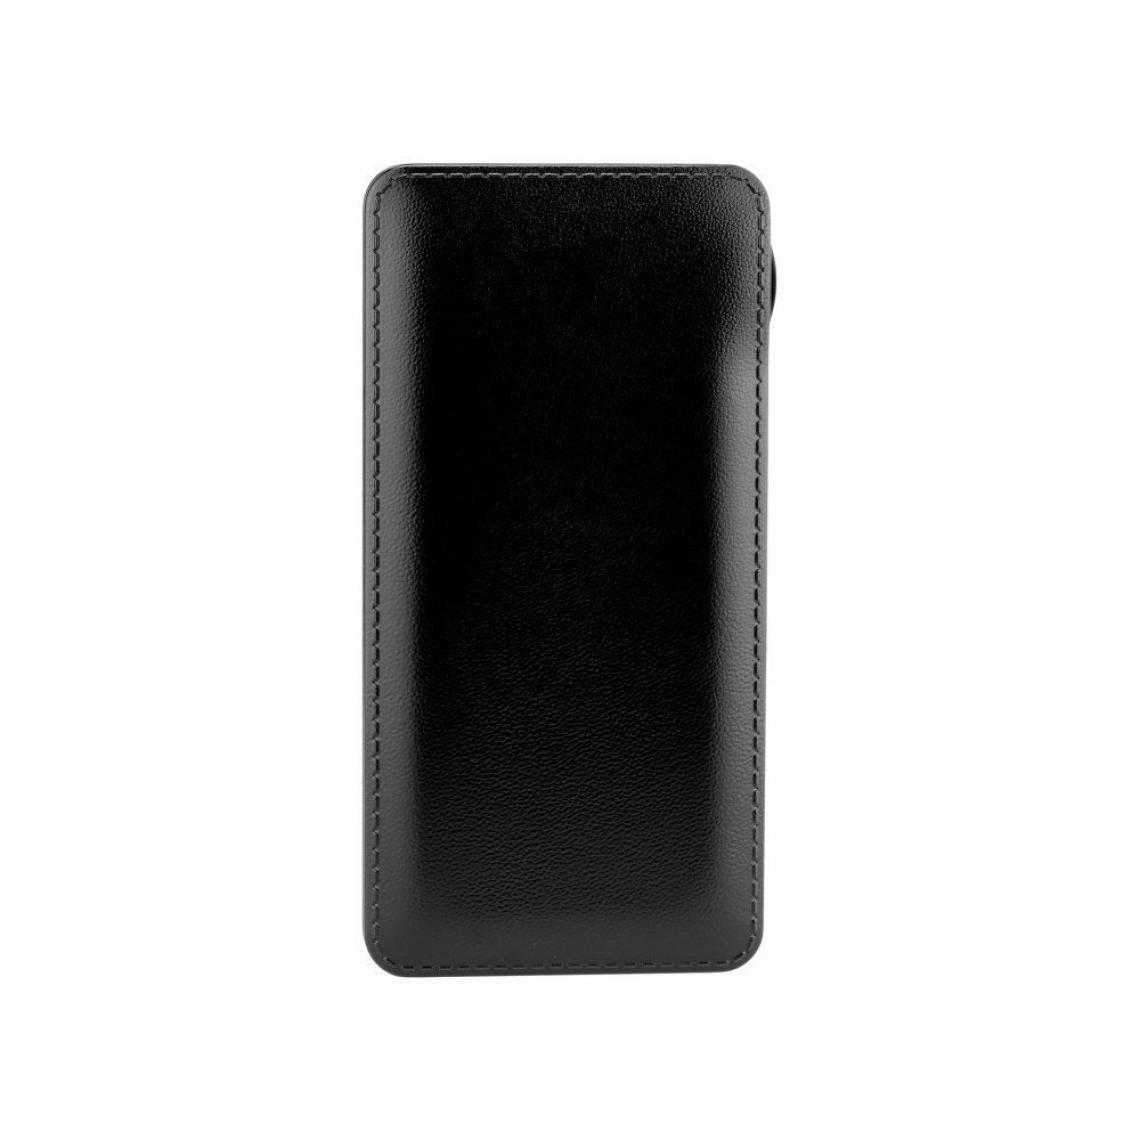 Ozzzo - Chargeur batterie externe 10000mAh powerbank ozzzo noir pour Gionee F10 - Autres accessoires smartphone